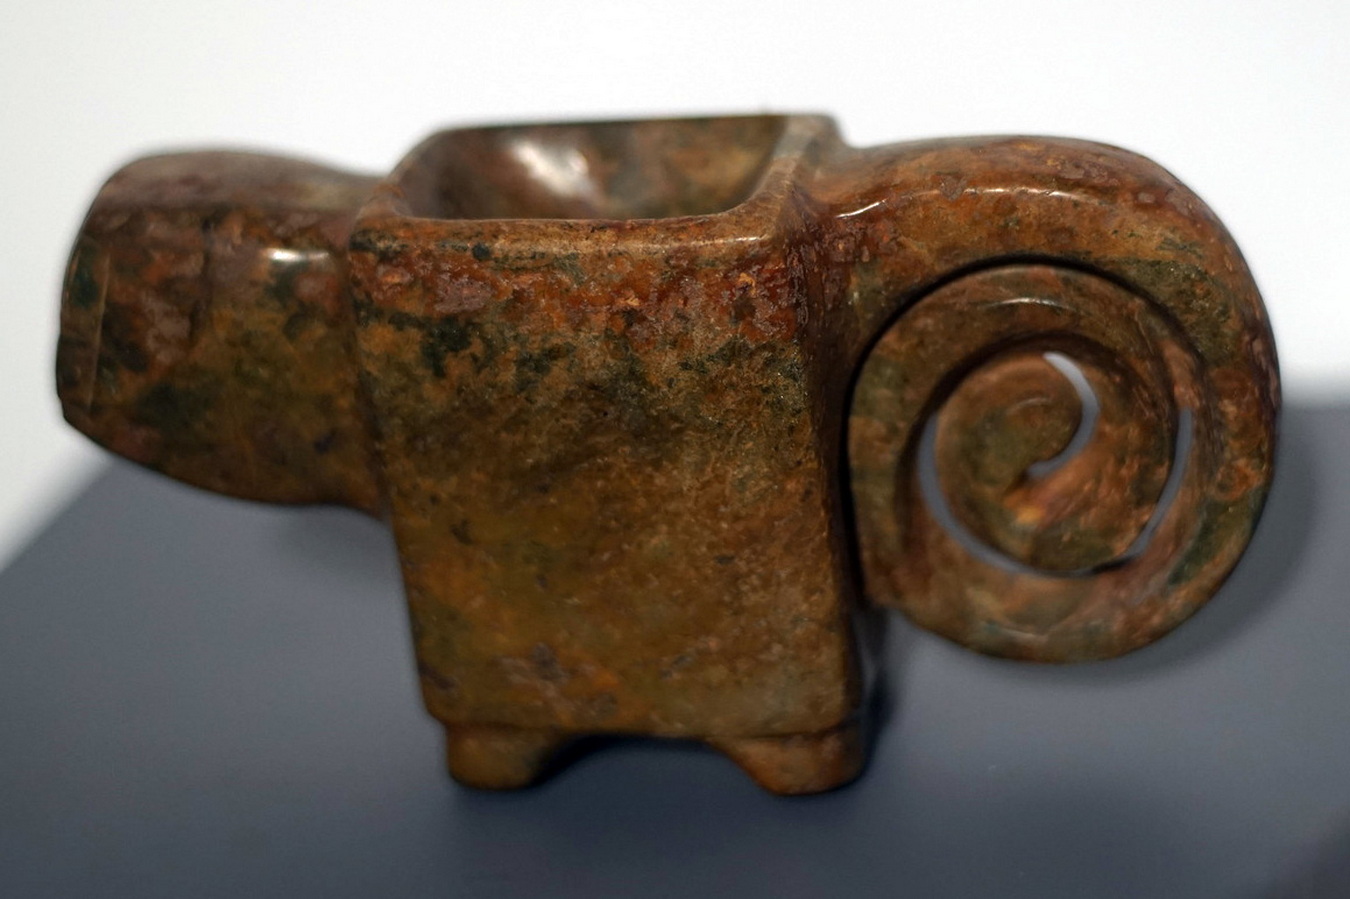 Chùm ảnh: Những hiện vật quý của văn minh cổ châu Mỹ ở Hà Nội